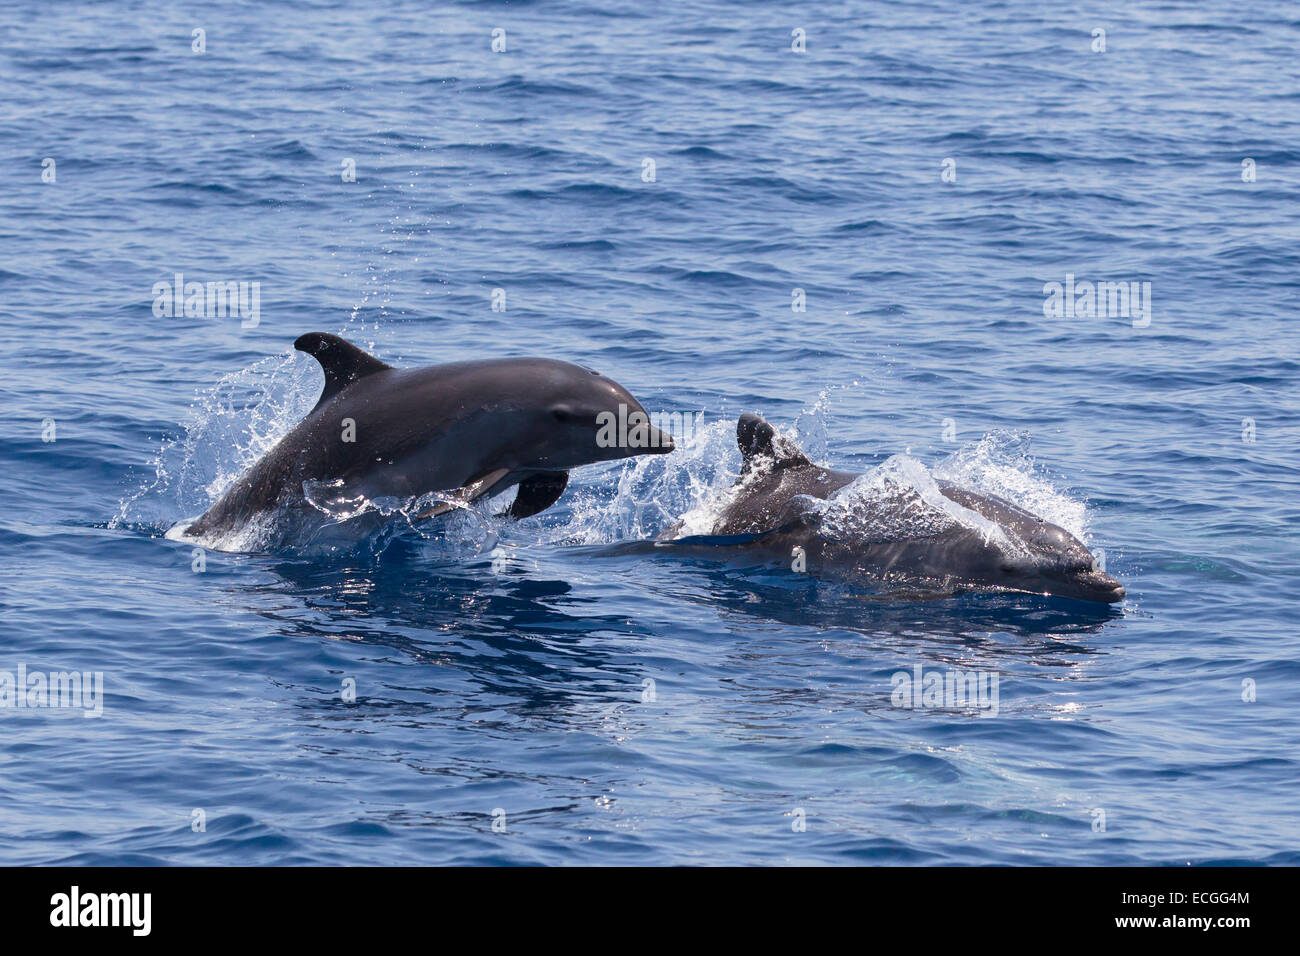 Common Bottlenose Dolphin, Tursiops truncatus, Großer Tümmler, pair surfacing, one leaping high, Indonesia Stock Photo